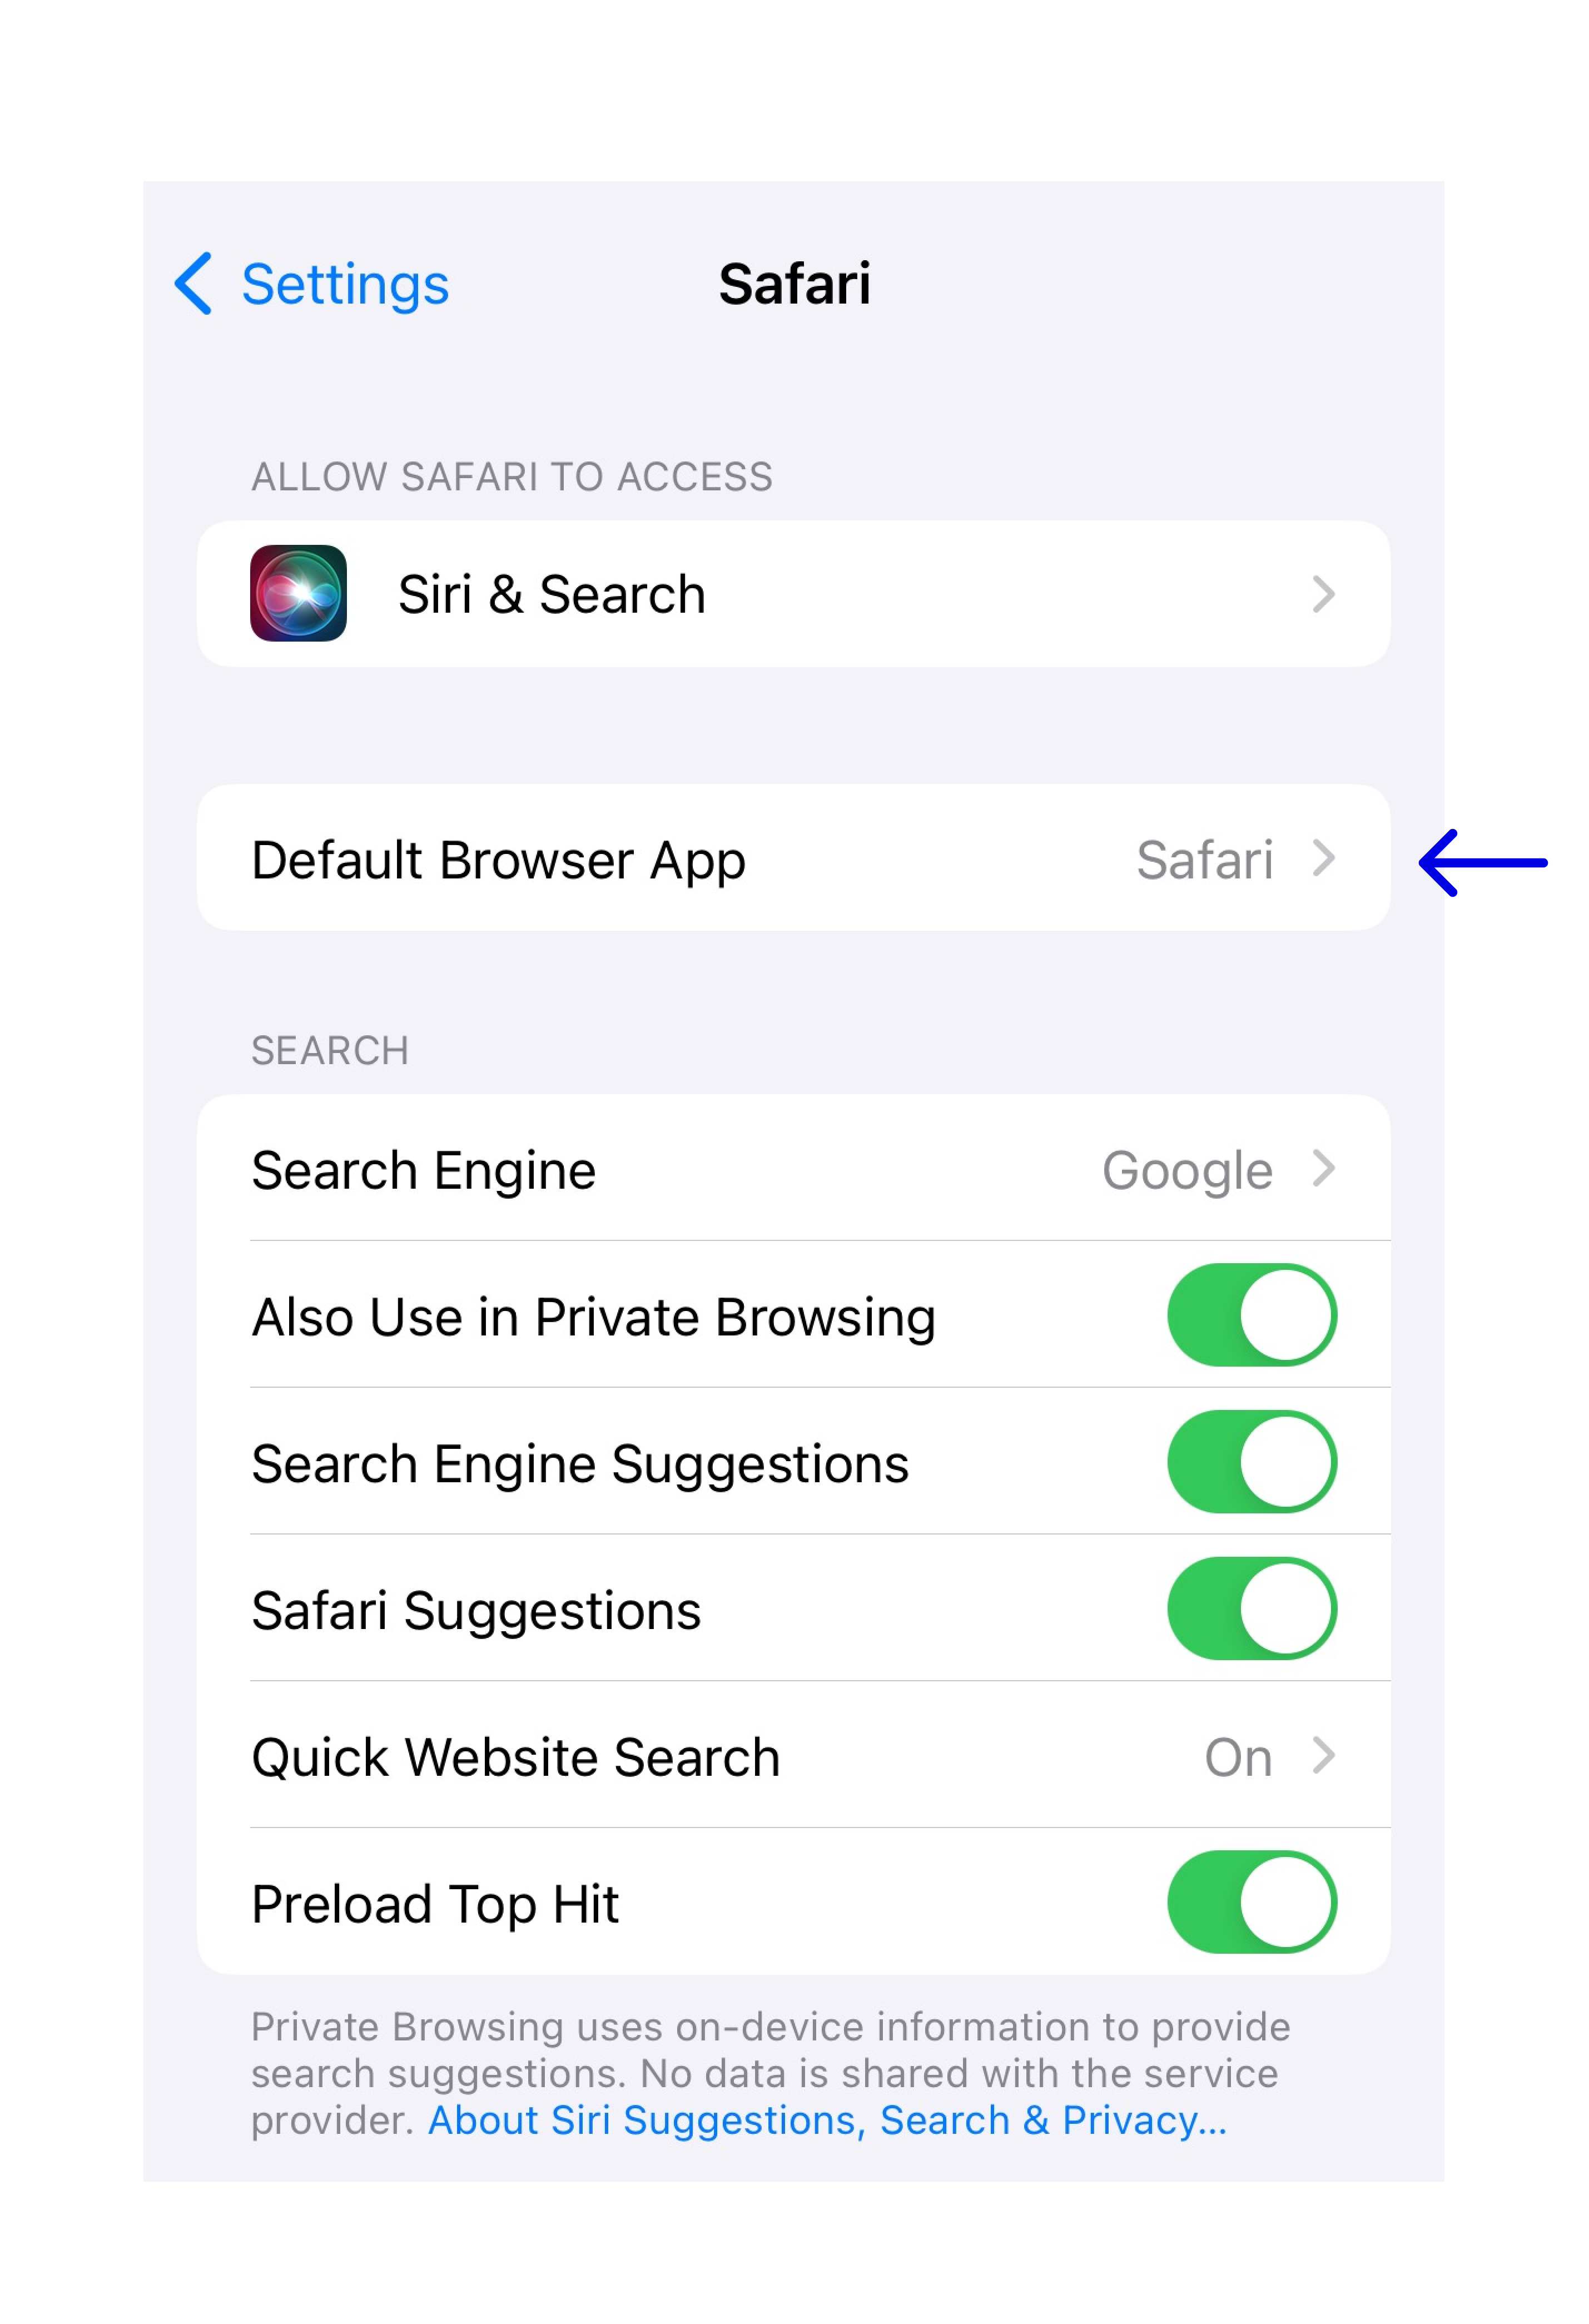 Setting default Safari as browser in iPhone settings.